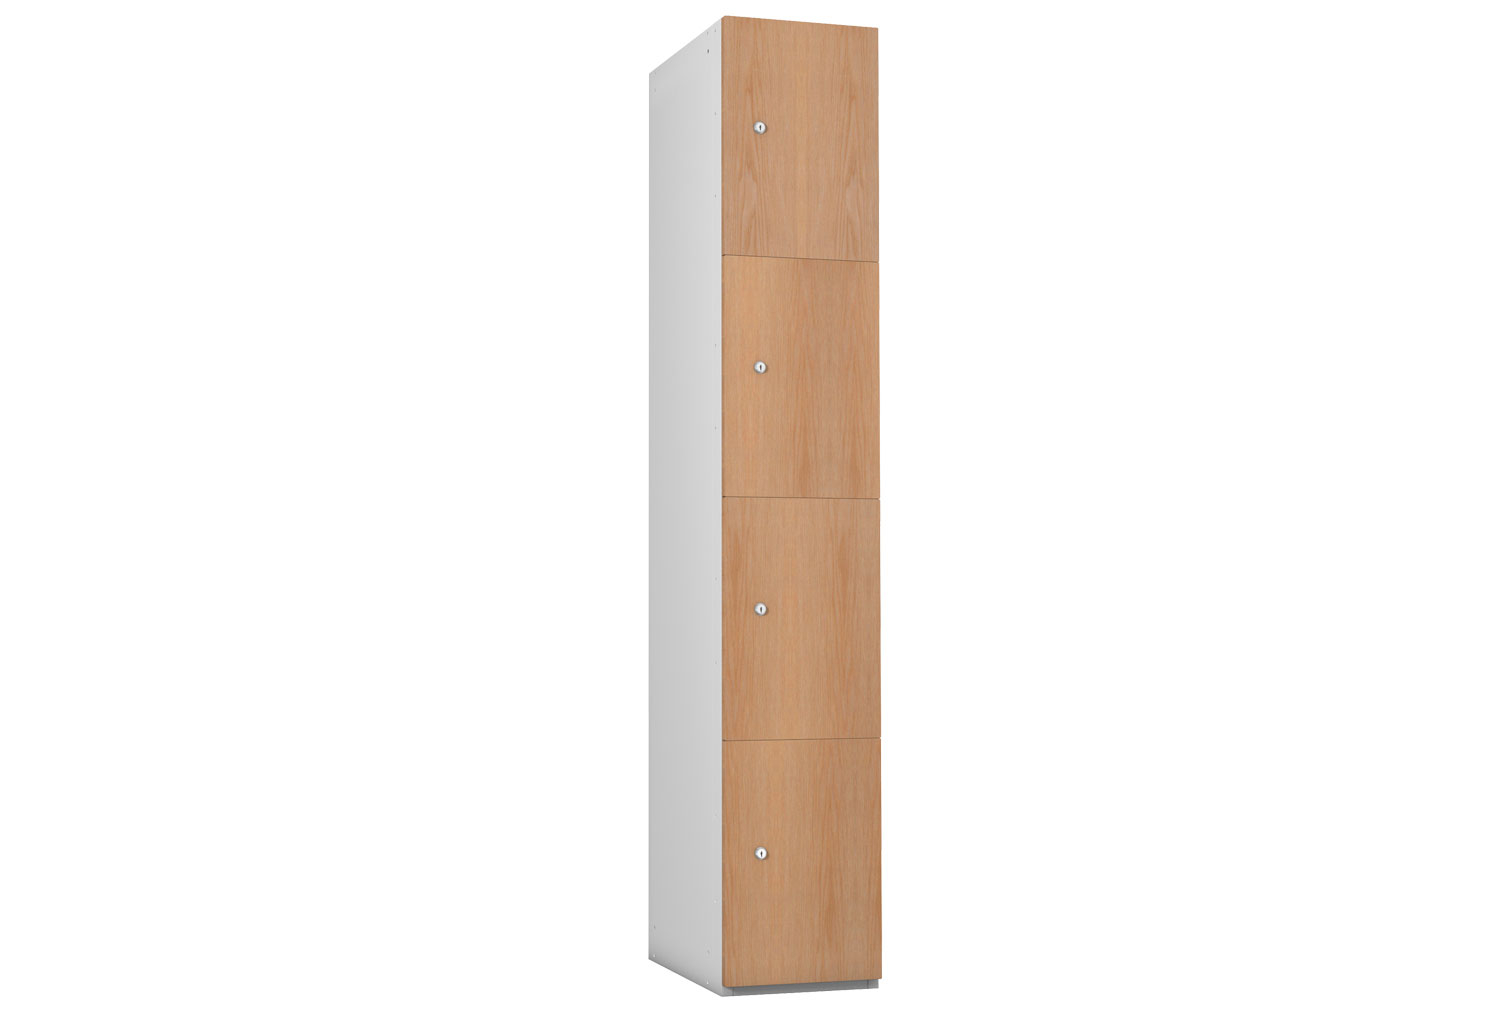 Probe Wood Effect Lockers, 4 Door, 31wx32dx178h (cm), Combination Lock, Oak